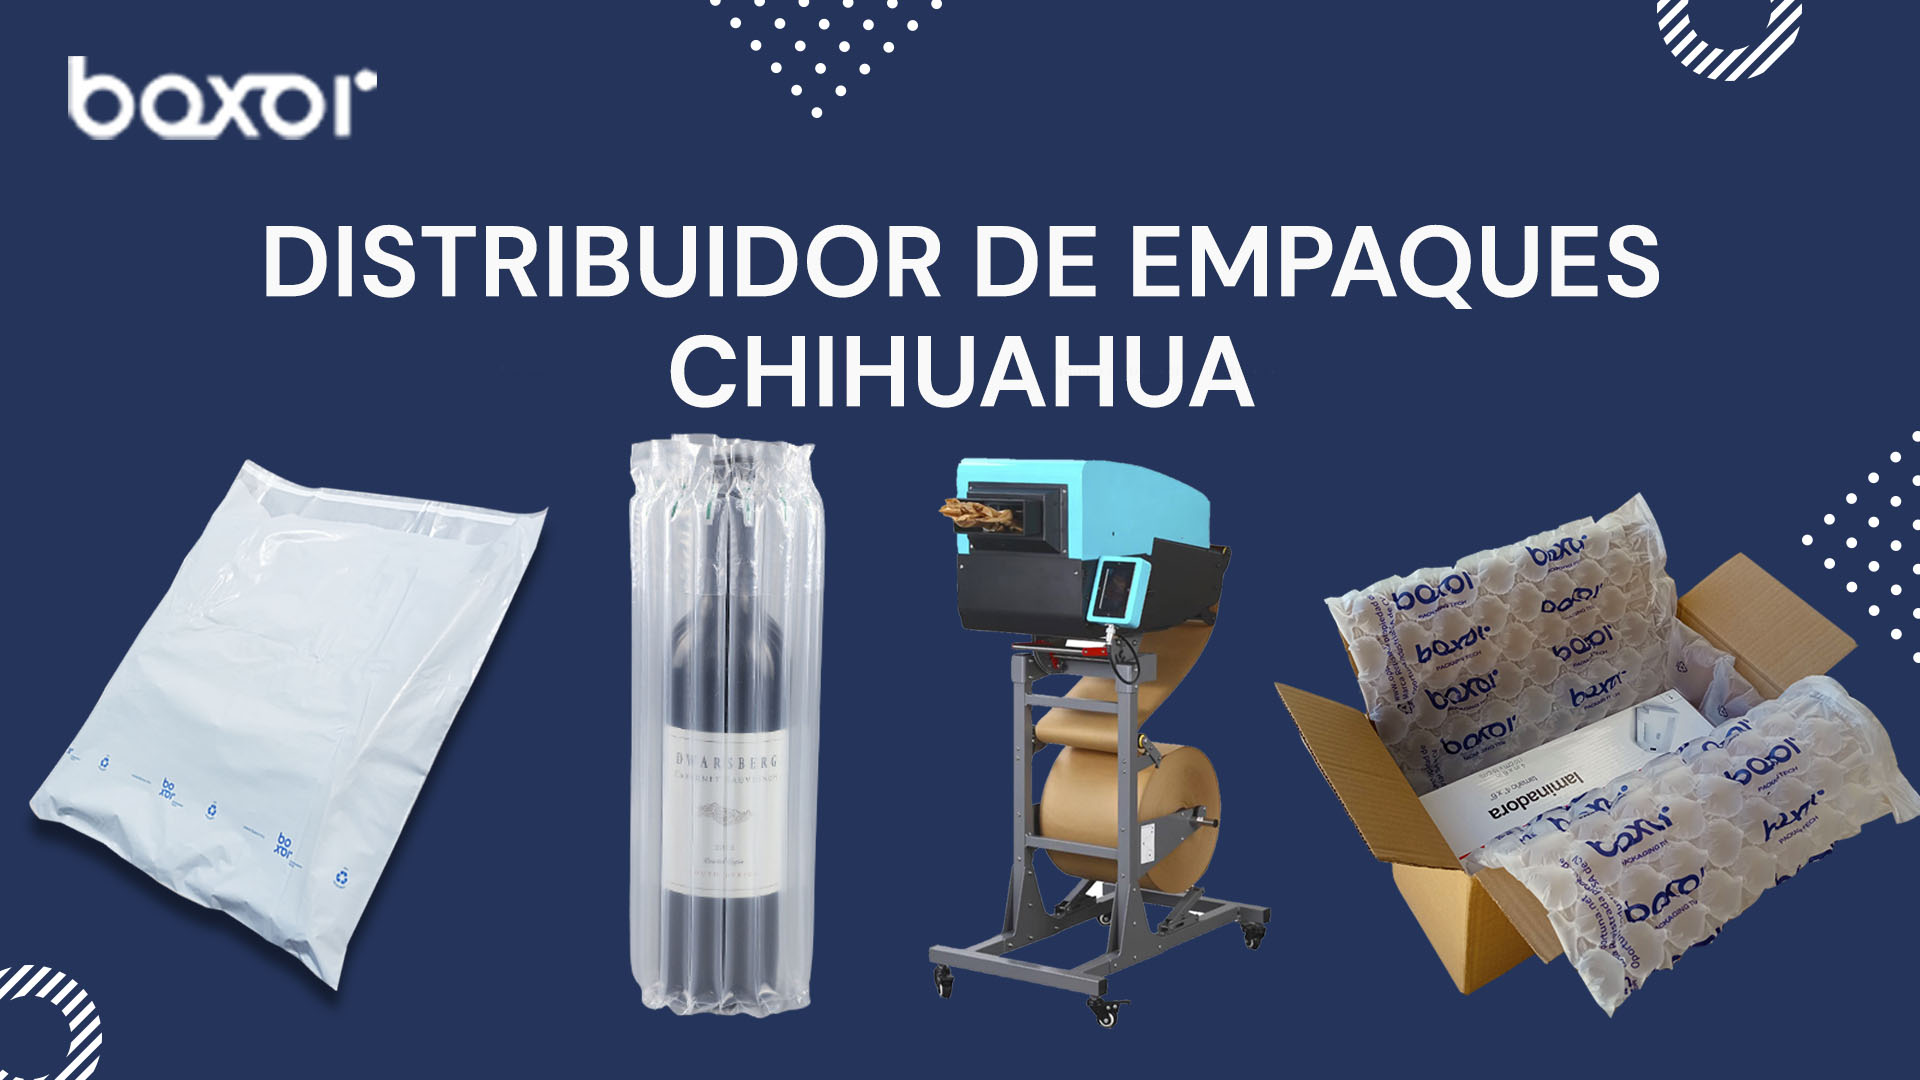 Distribuidor de empaques Chihuahua